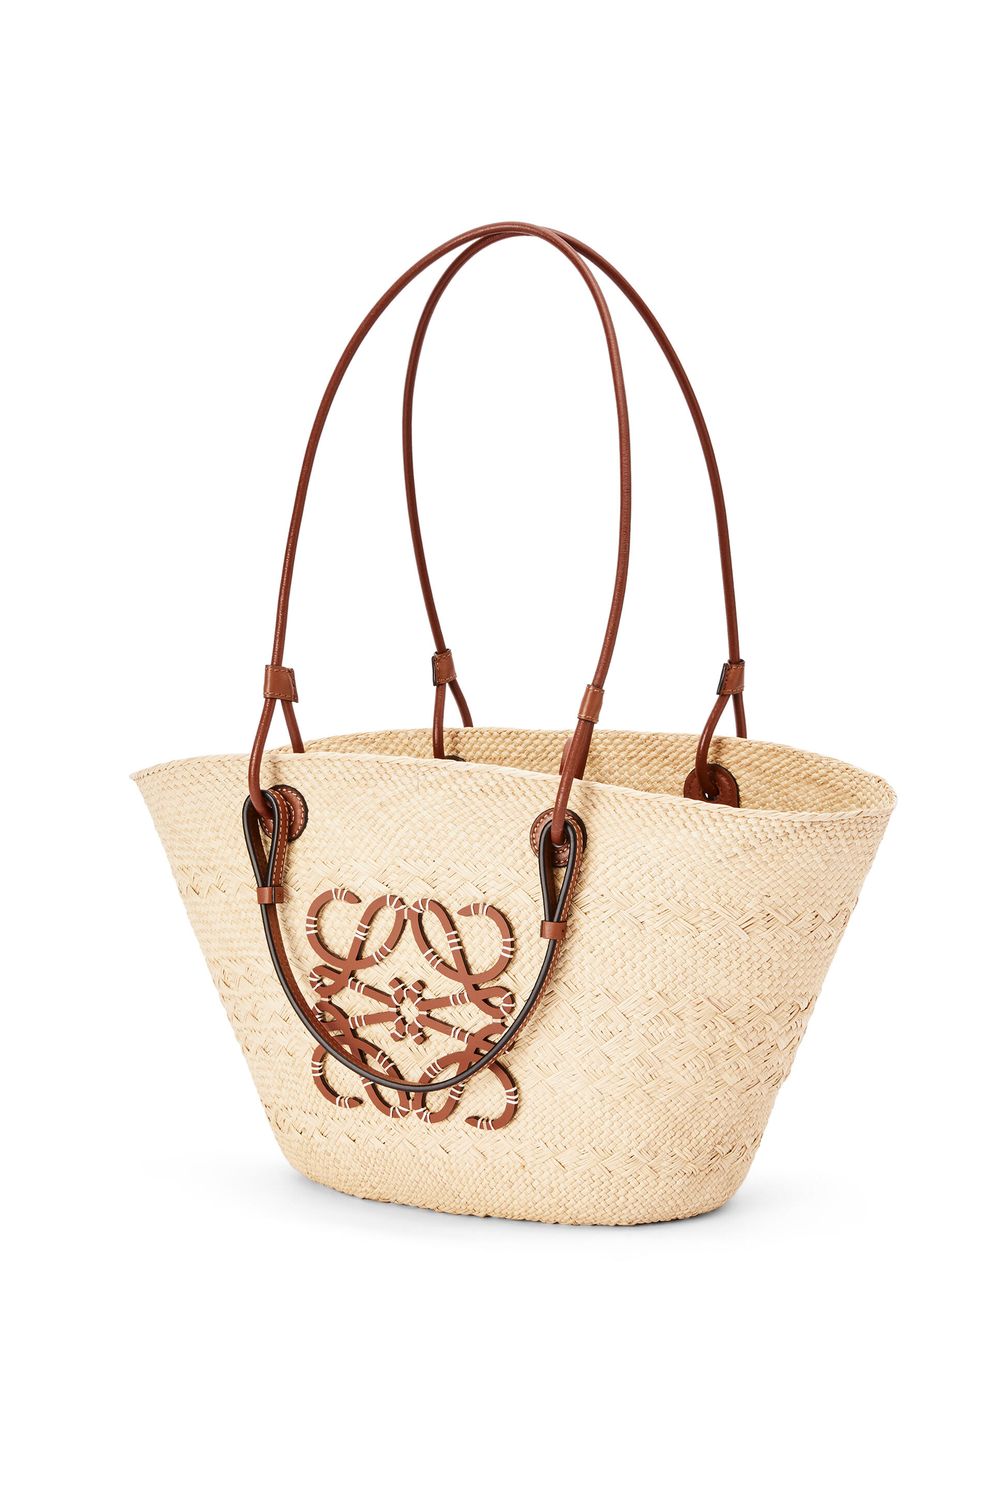 LOEWE Women's Medium Anagram Weave Basket Handbag in Tan